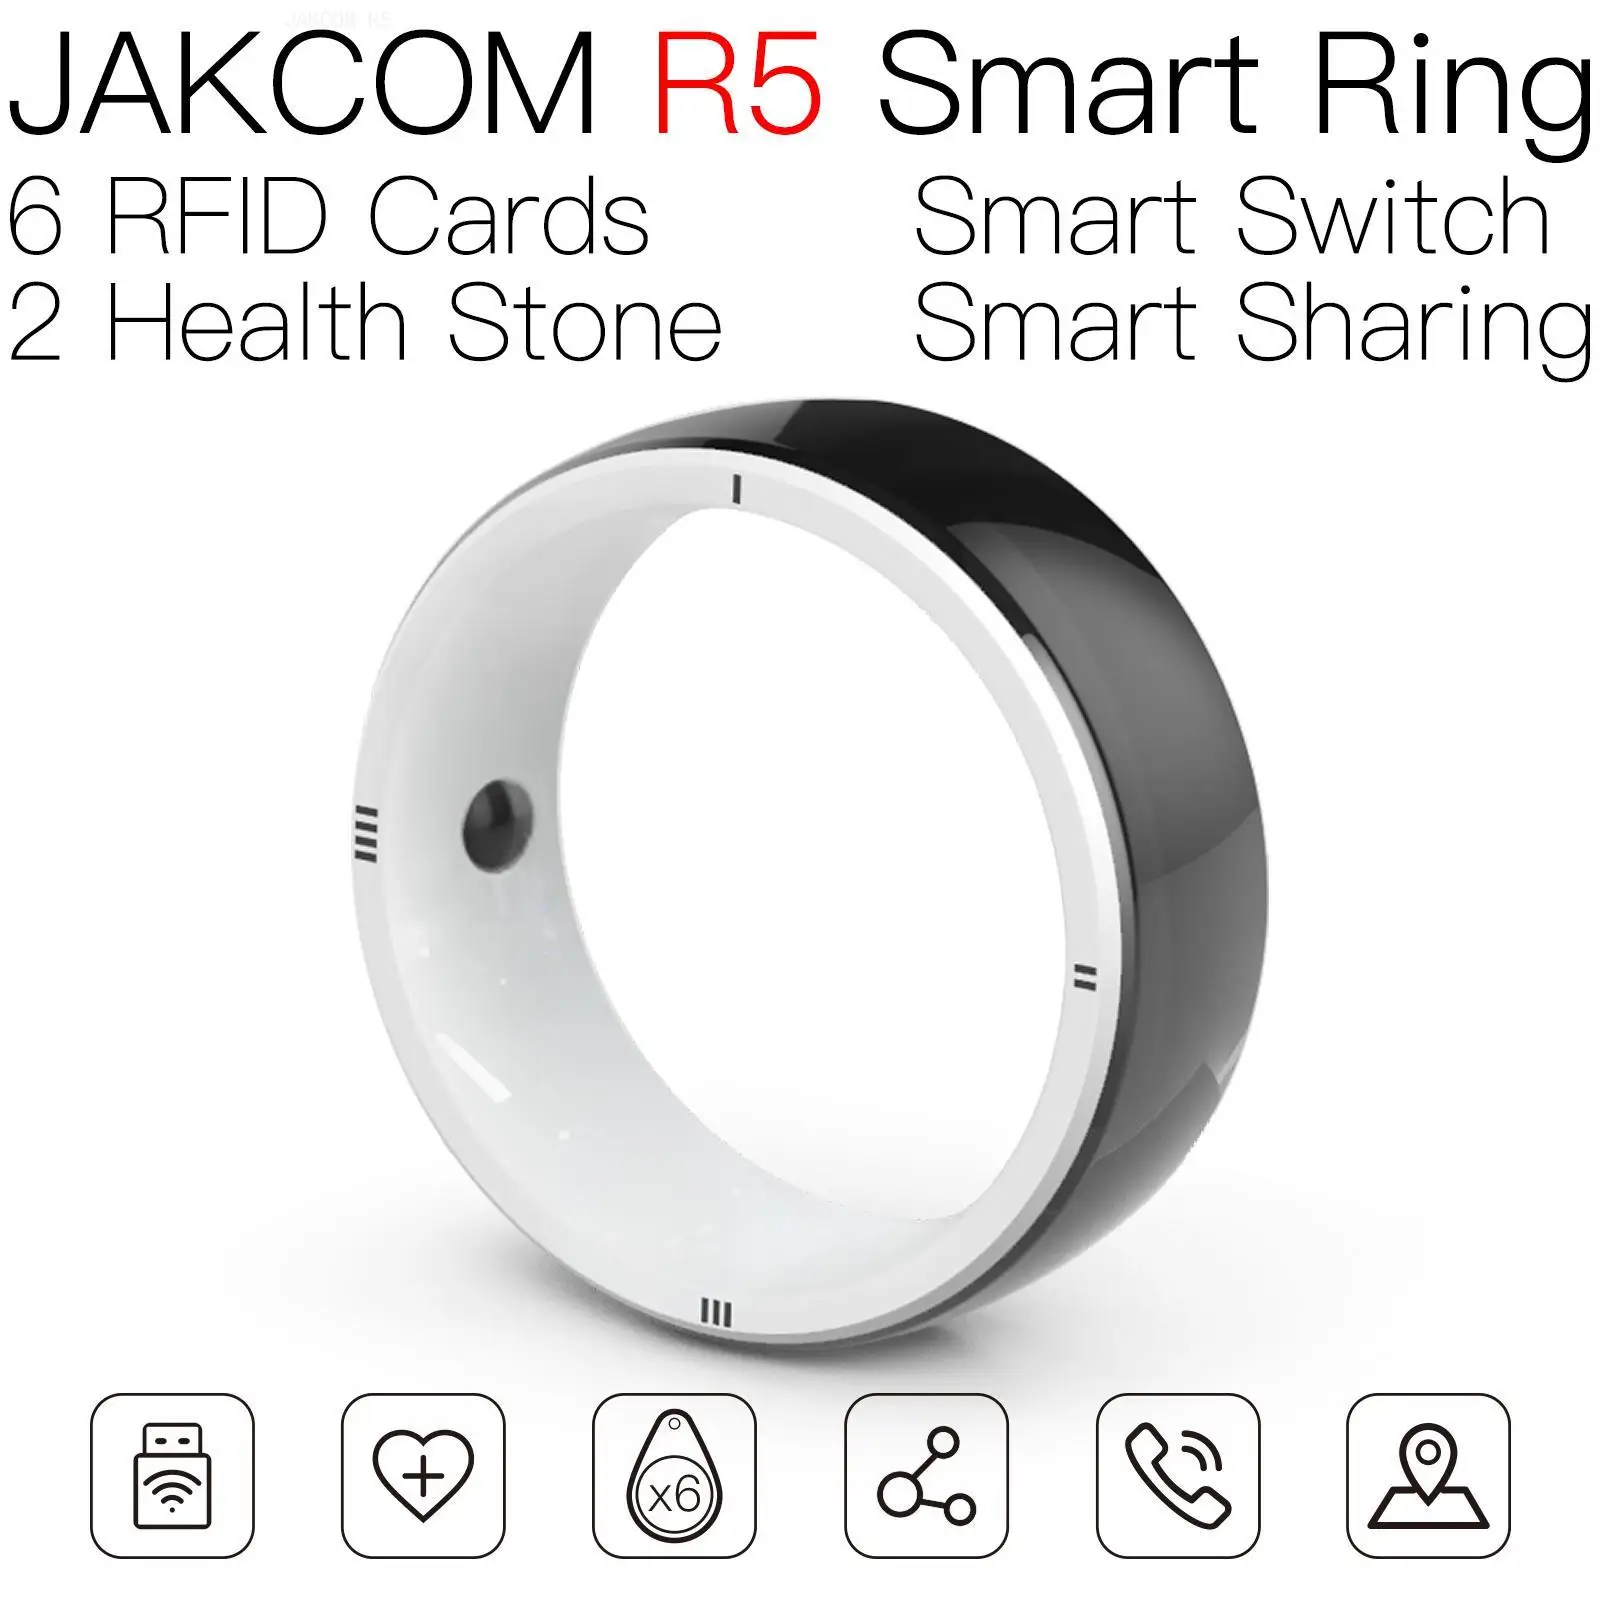 

Смарт-кольцо JAKCOM R5, новый продукт, как 5 мм rfid, визитные карты, дверной замок, магнитная наклейка для карт, 125 кГц, перезаписываемое все